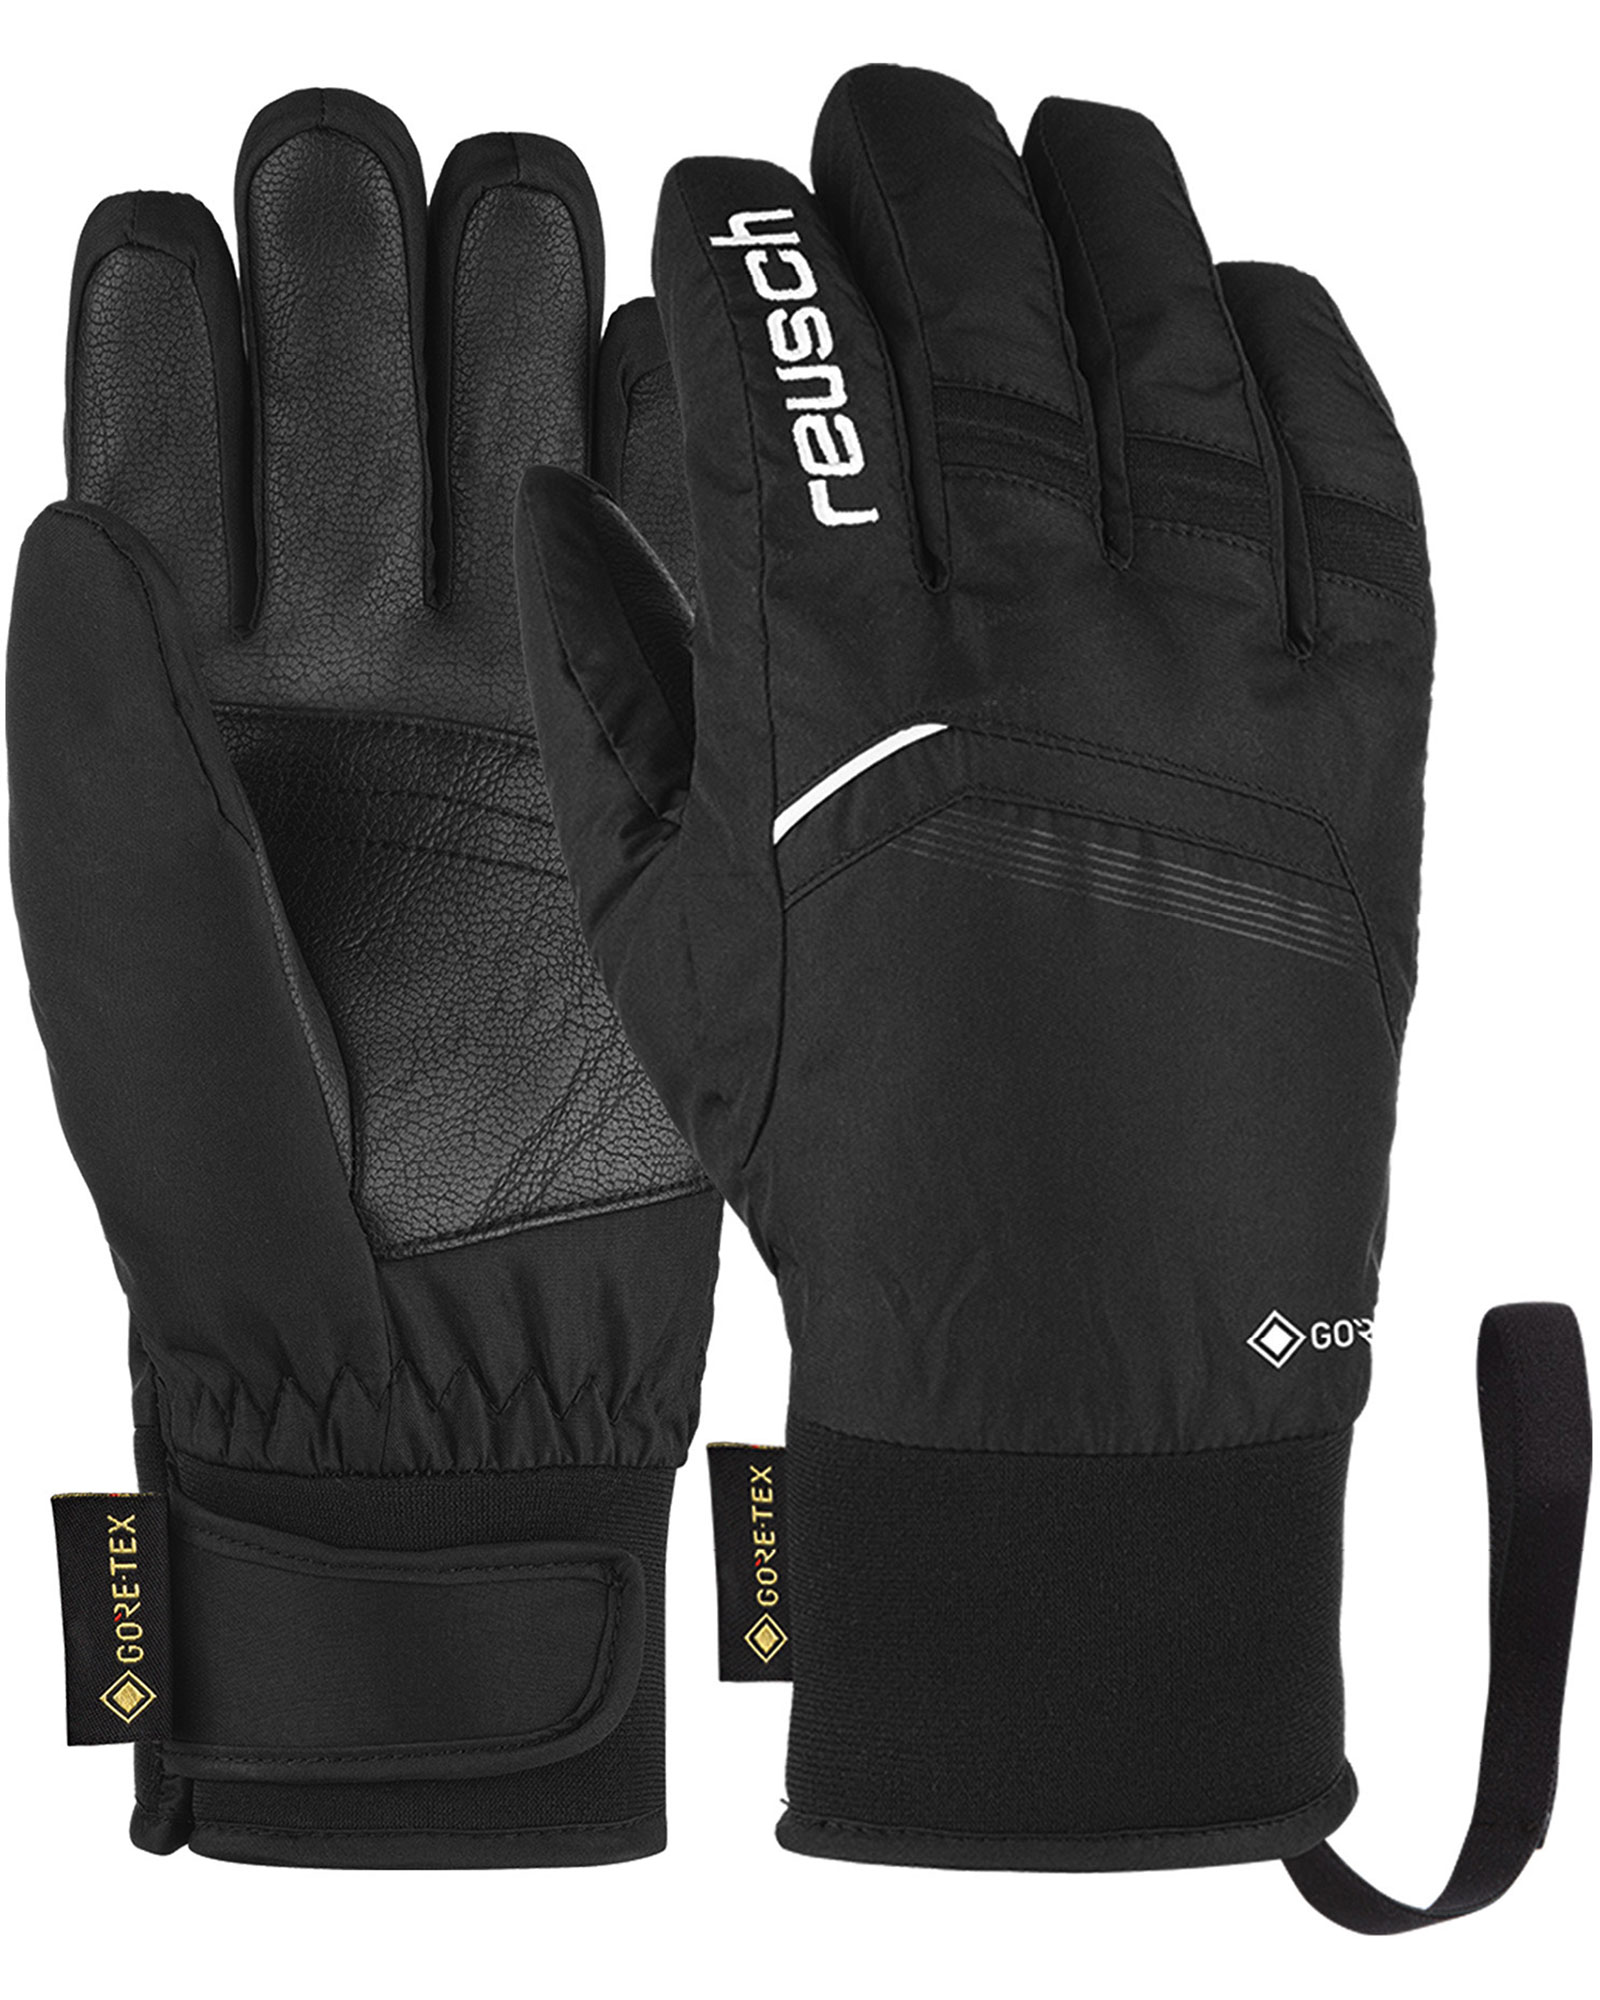 Reusch Bolt GORE TEX Kids’ Gloves - Black/white Size 4